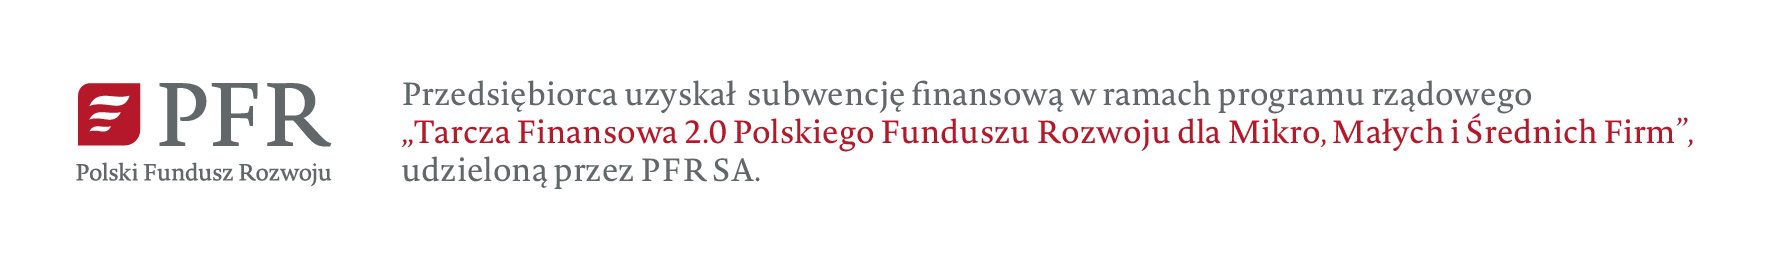 
					Firma uzyskała Subwencję Finansową w programie rządowym „Tarcza Finansowa 2.0 Polskiego Funduszu Rozwoju dla mikro, małych i średnich firm”, której podmiotem udzielającym wsparcia był PFR.
				